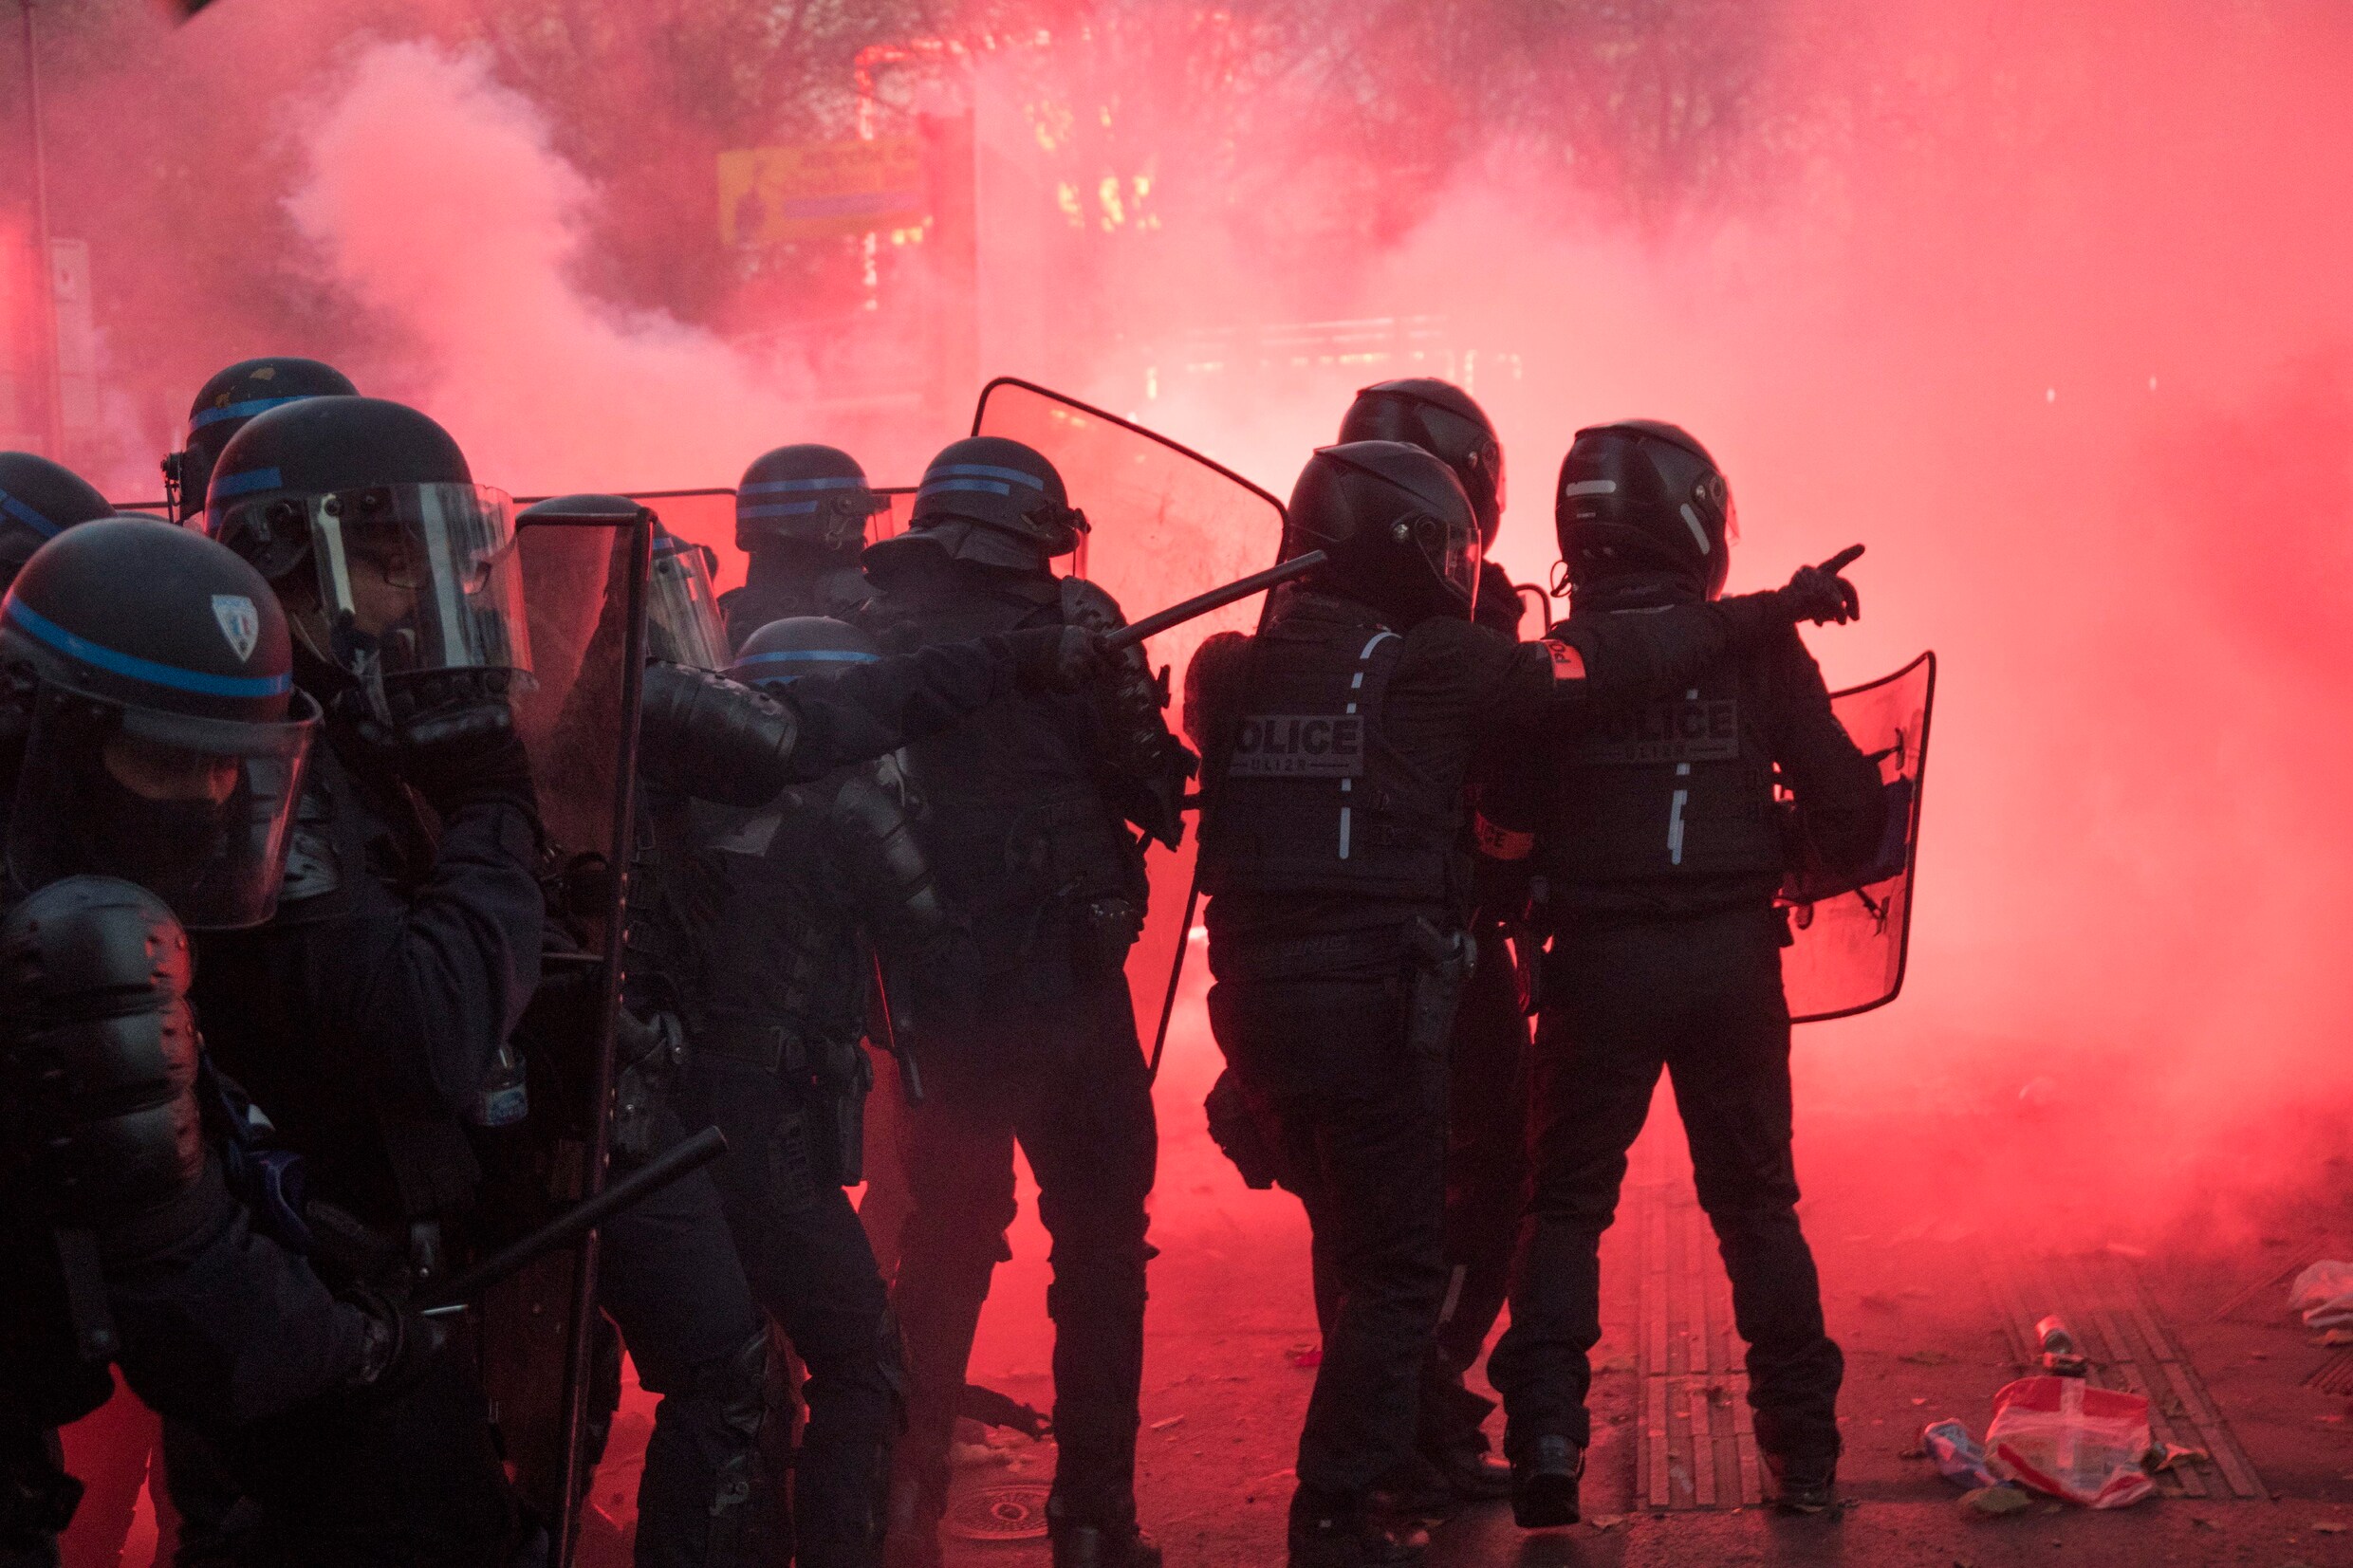 Betoging tegen politiegeweld ontspoort in Frankrijk: meer dan zestig agenten gewond